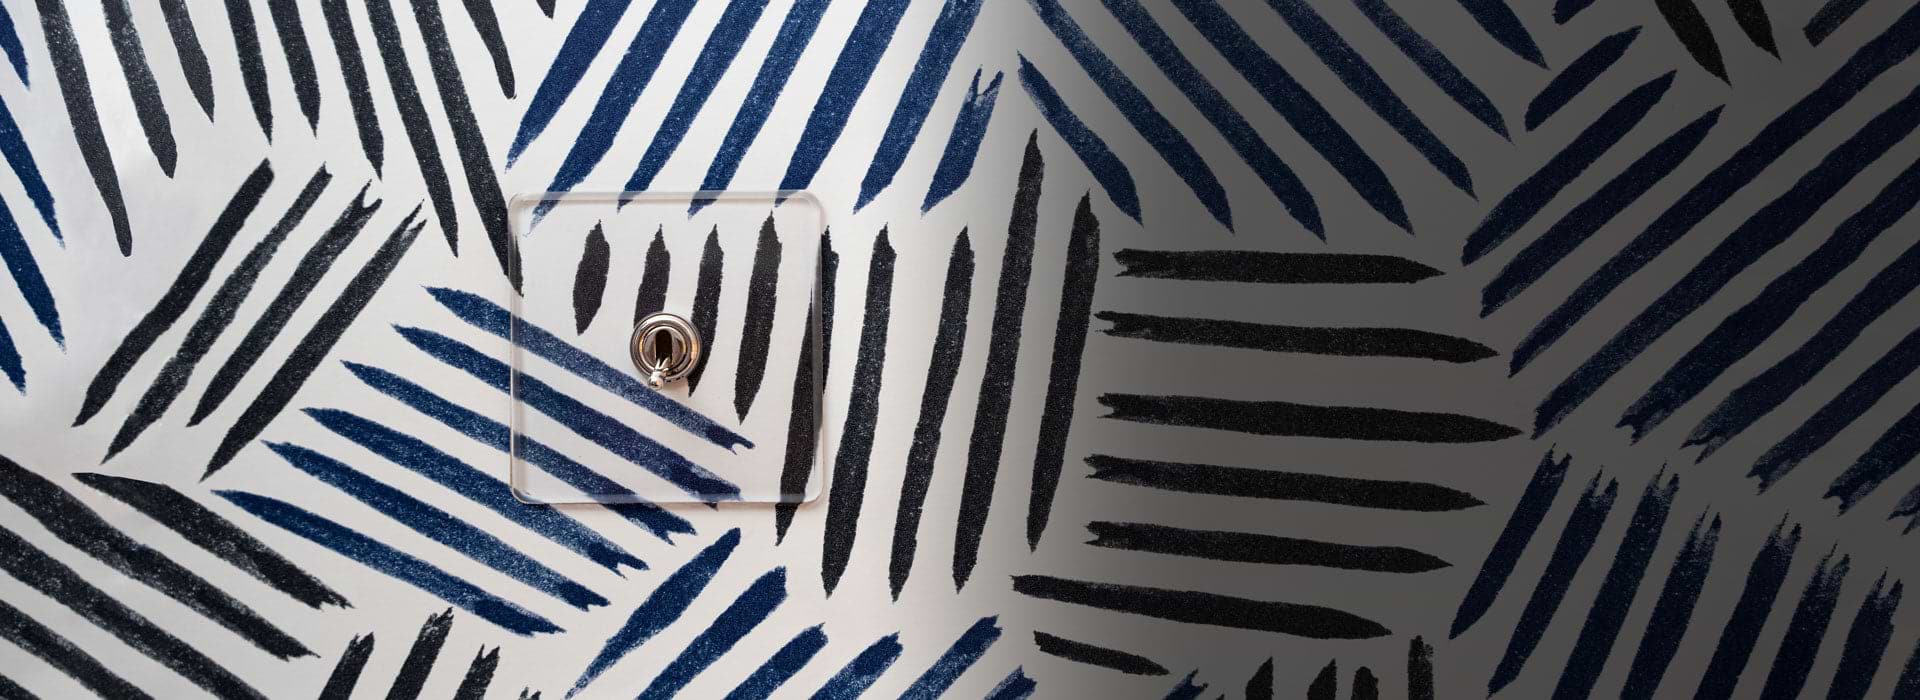 Durchsichtiger Rahmen mit vernickeltem Kipphebelschalter auf weißer Tapete mit schwarzen und blauen Strichen